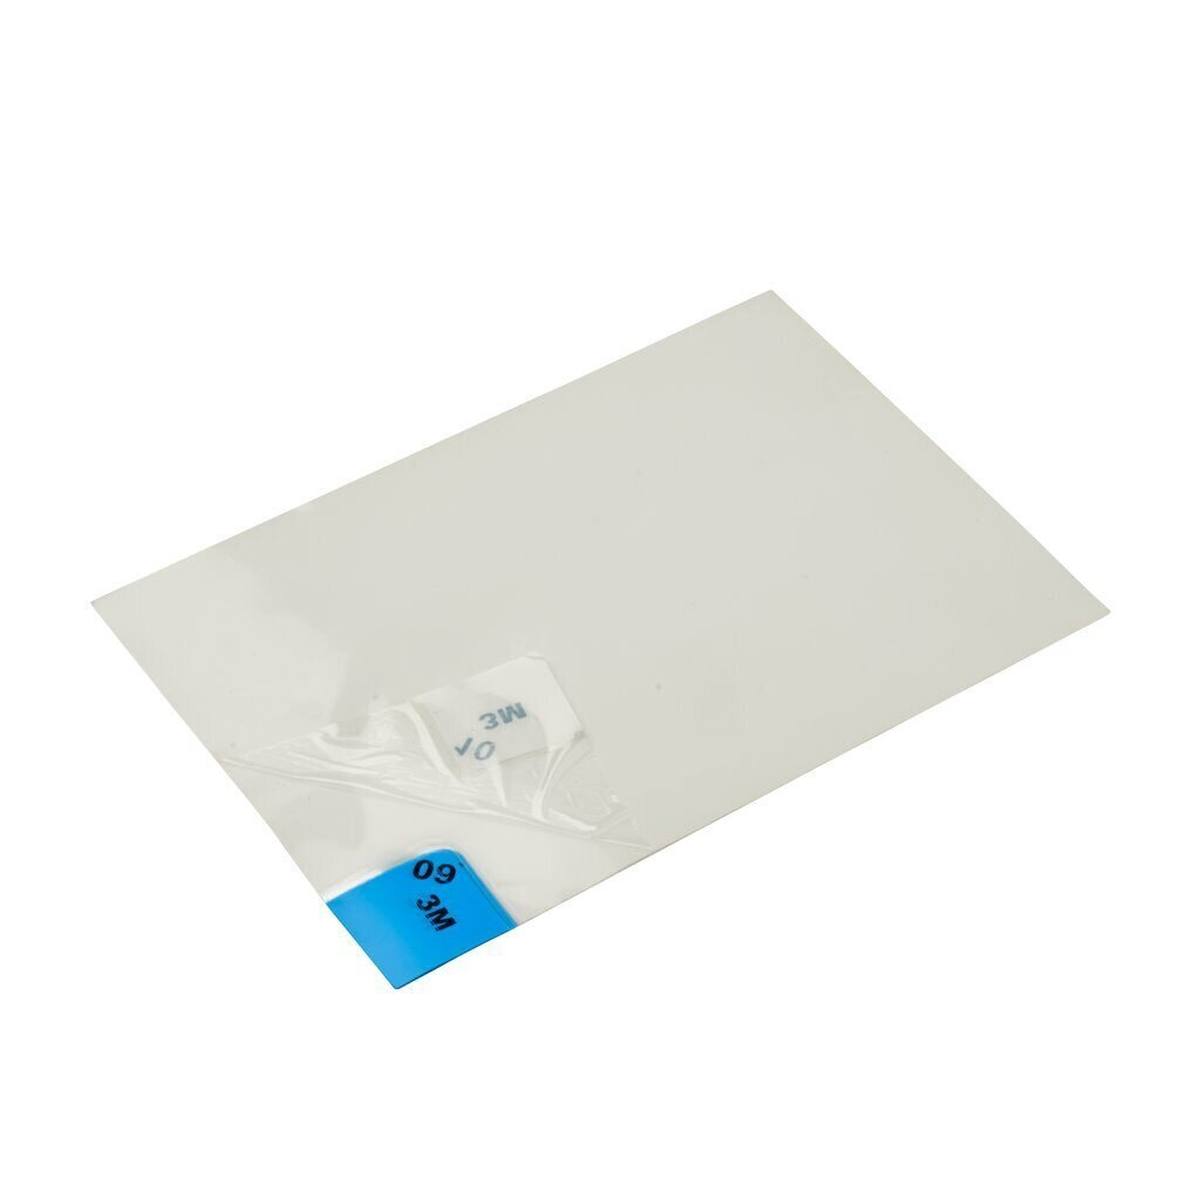 3M 4300 Nomad Feinstaub Adhäsivmatte, weiß, 1,15m x 0,6m, 40Stück transparent Polyethylen-Schichten